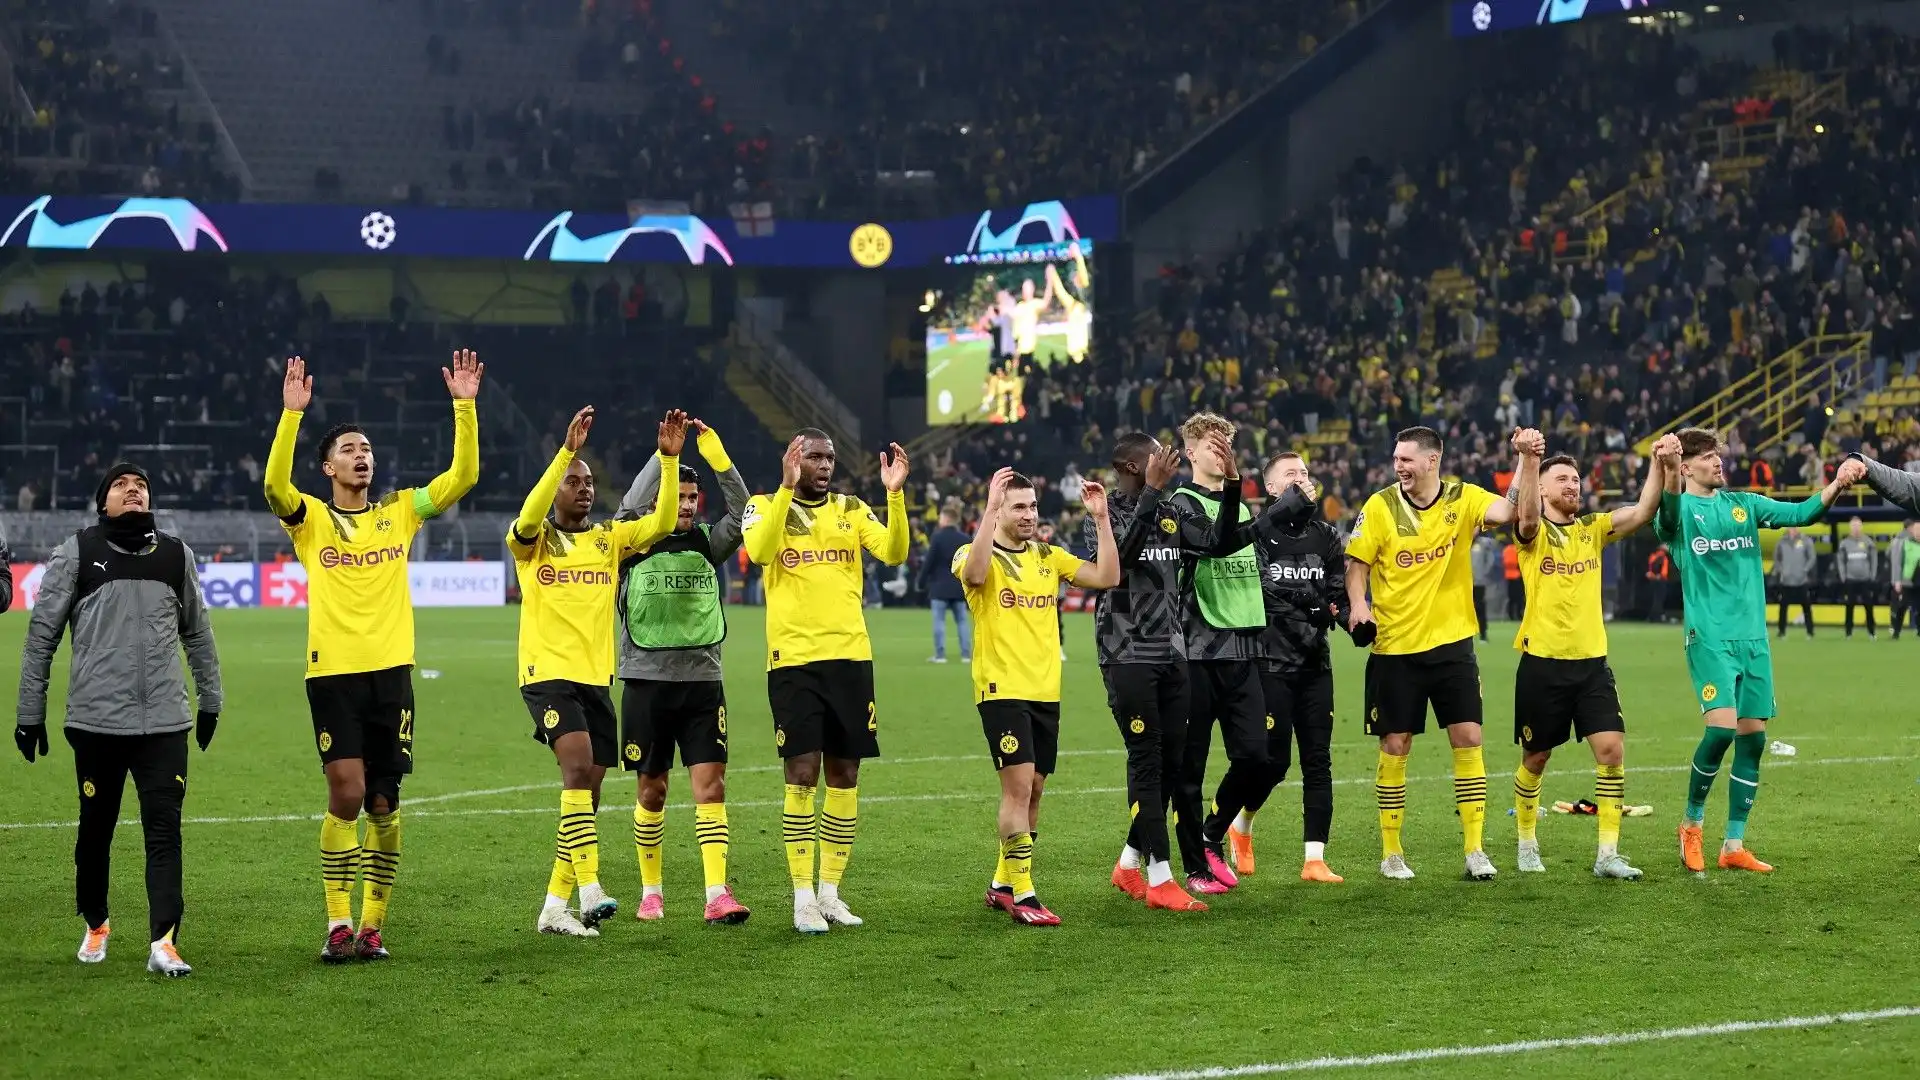 Il Borussia Dortmund ha vinto per 1-0 contro il Chelsea